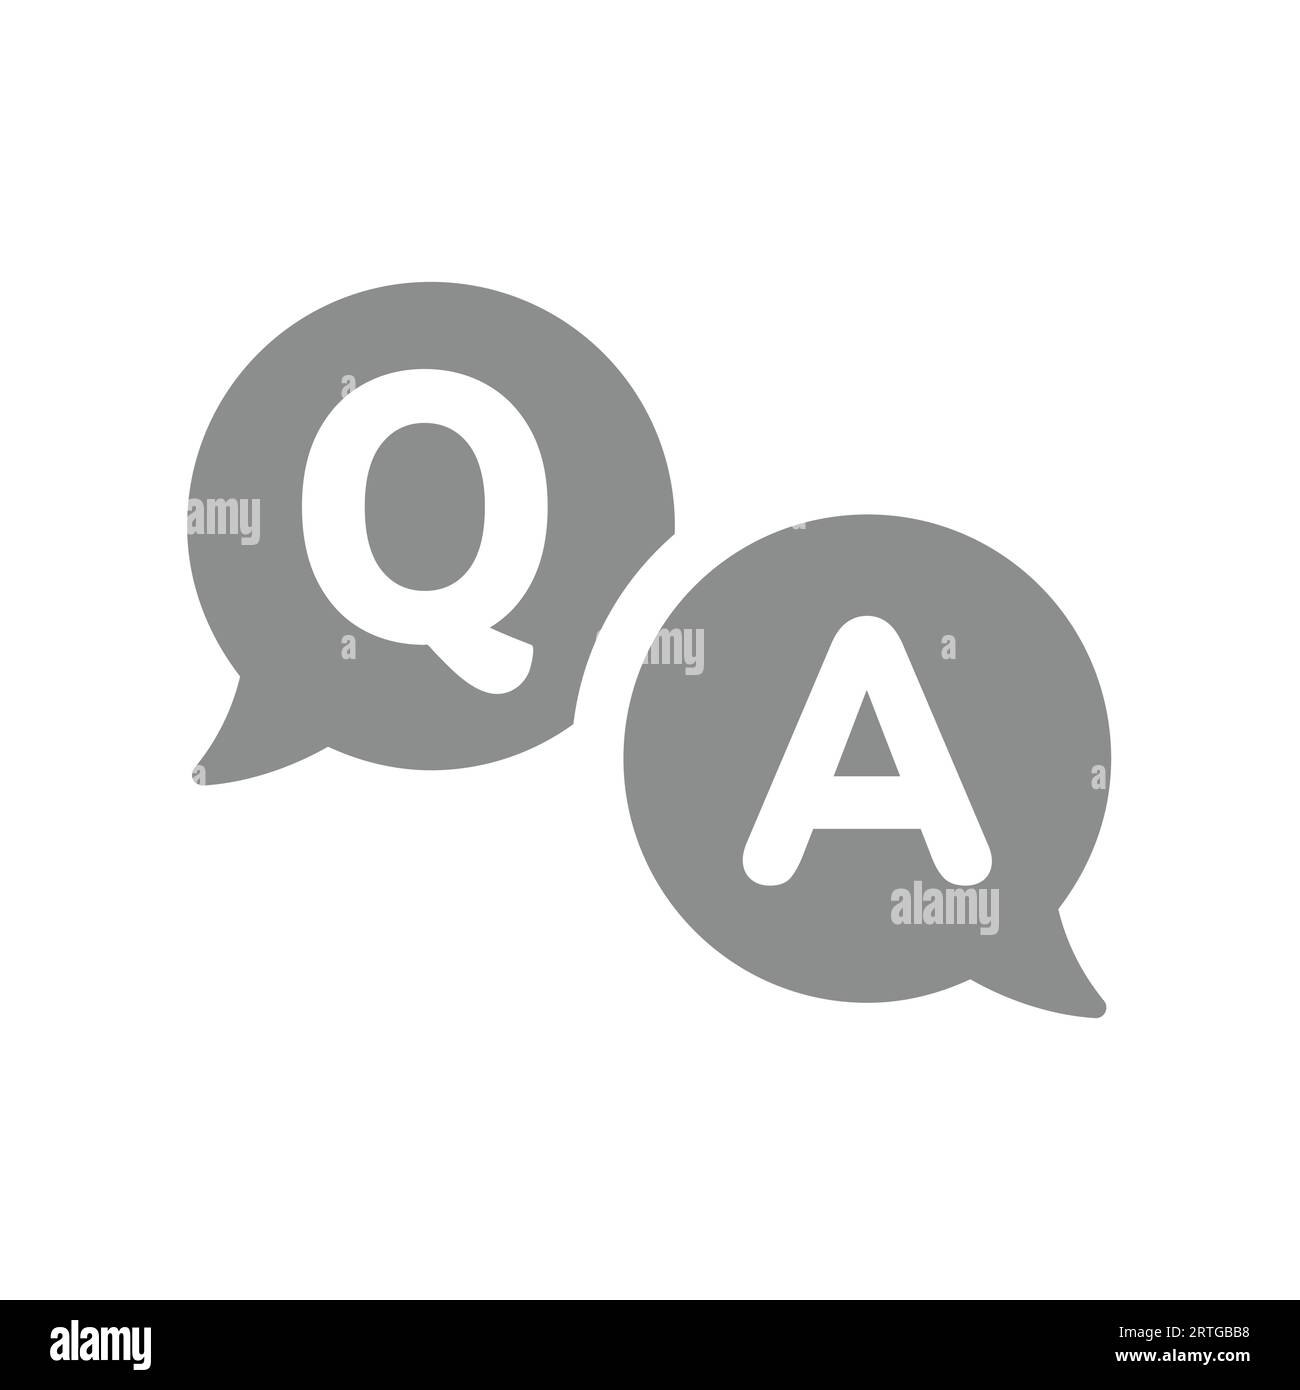 Q e Un'icona a forma di bolla della chat vettoriale. Domande frequenti, domande e risposte bollatura vocale simbolo nuvola. Illustrazione Vettoriale